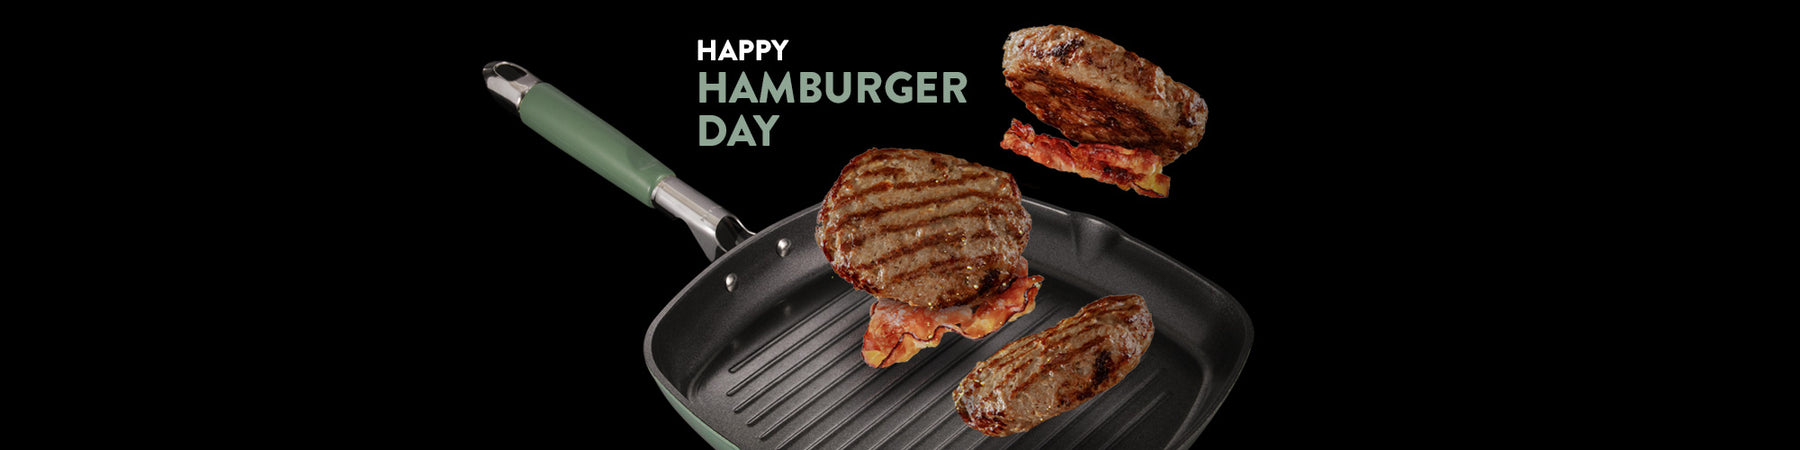 Hamburger Day 2021: e tu come lo festeggi?